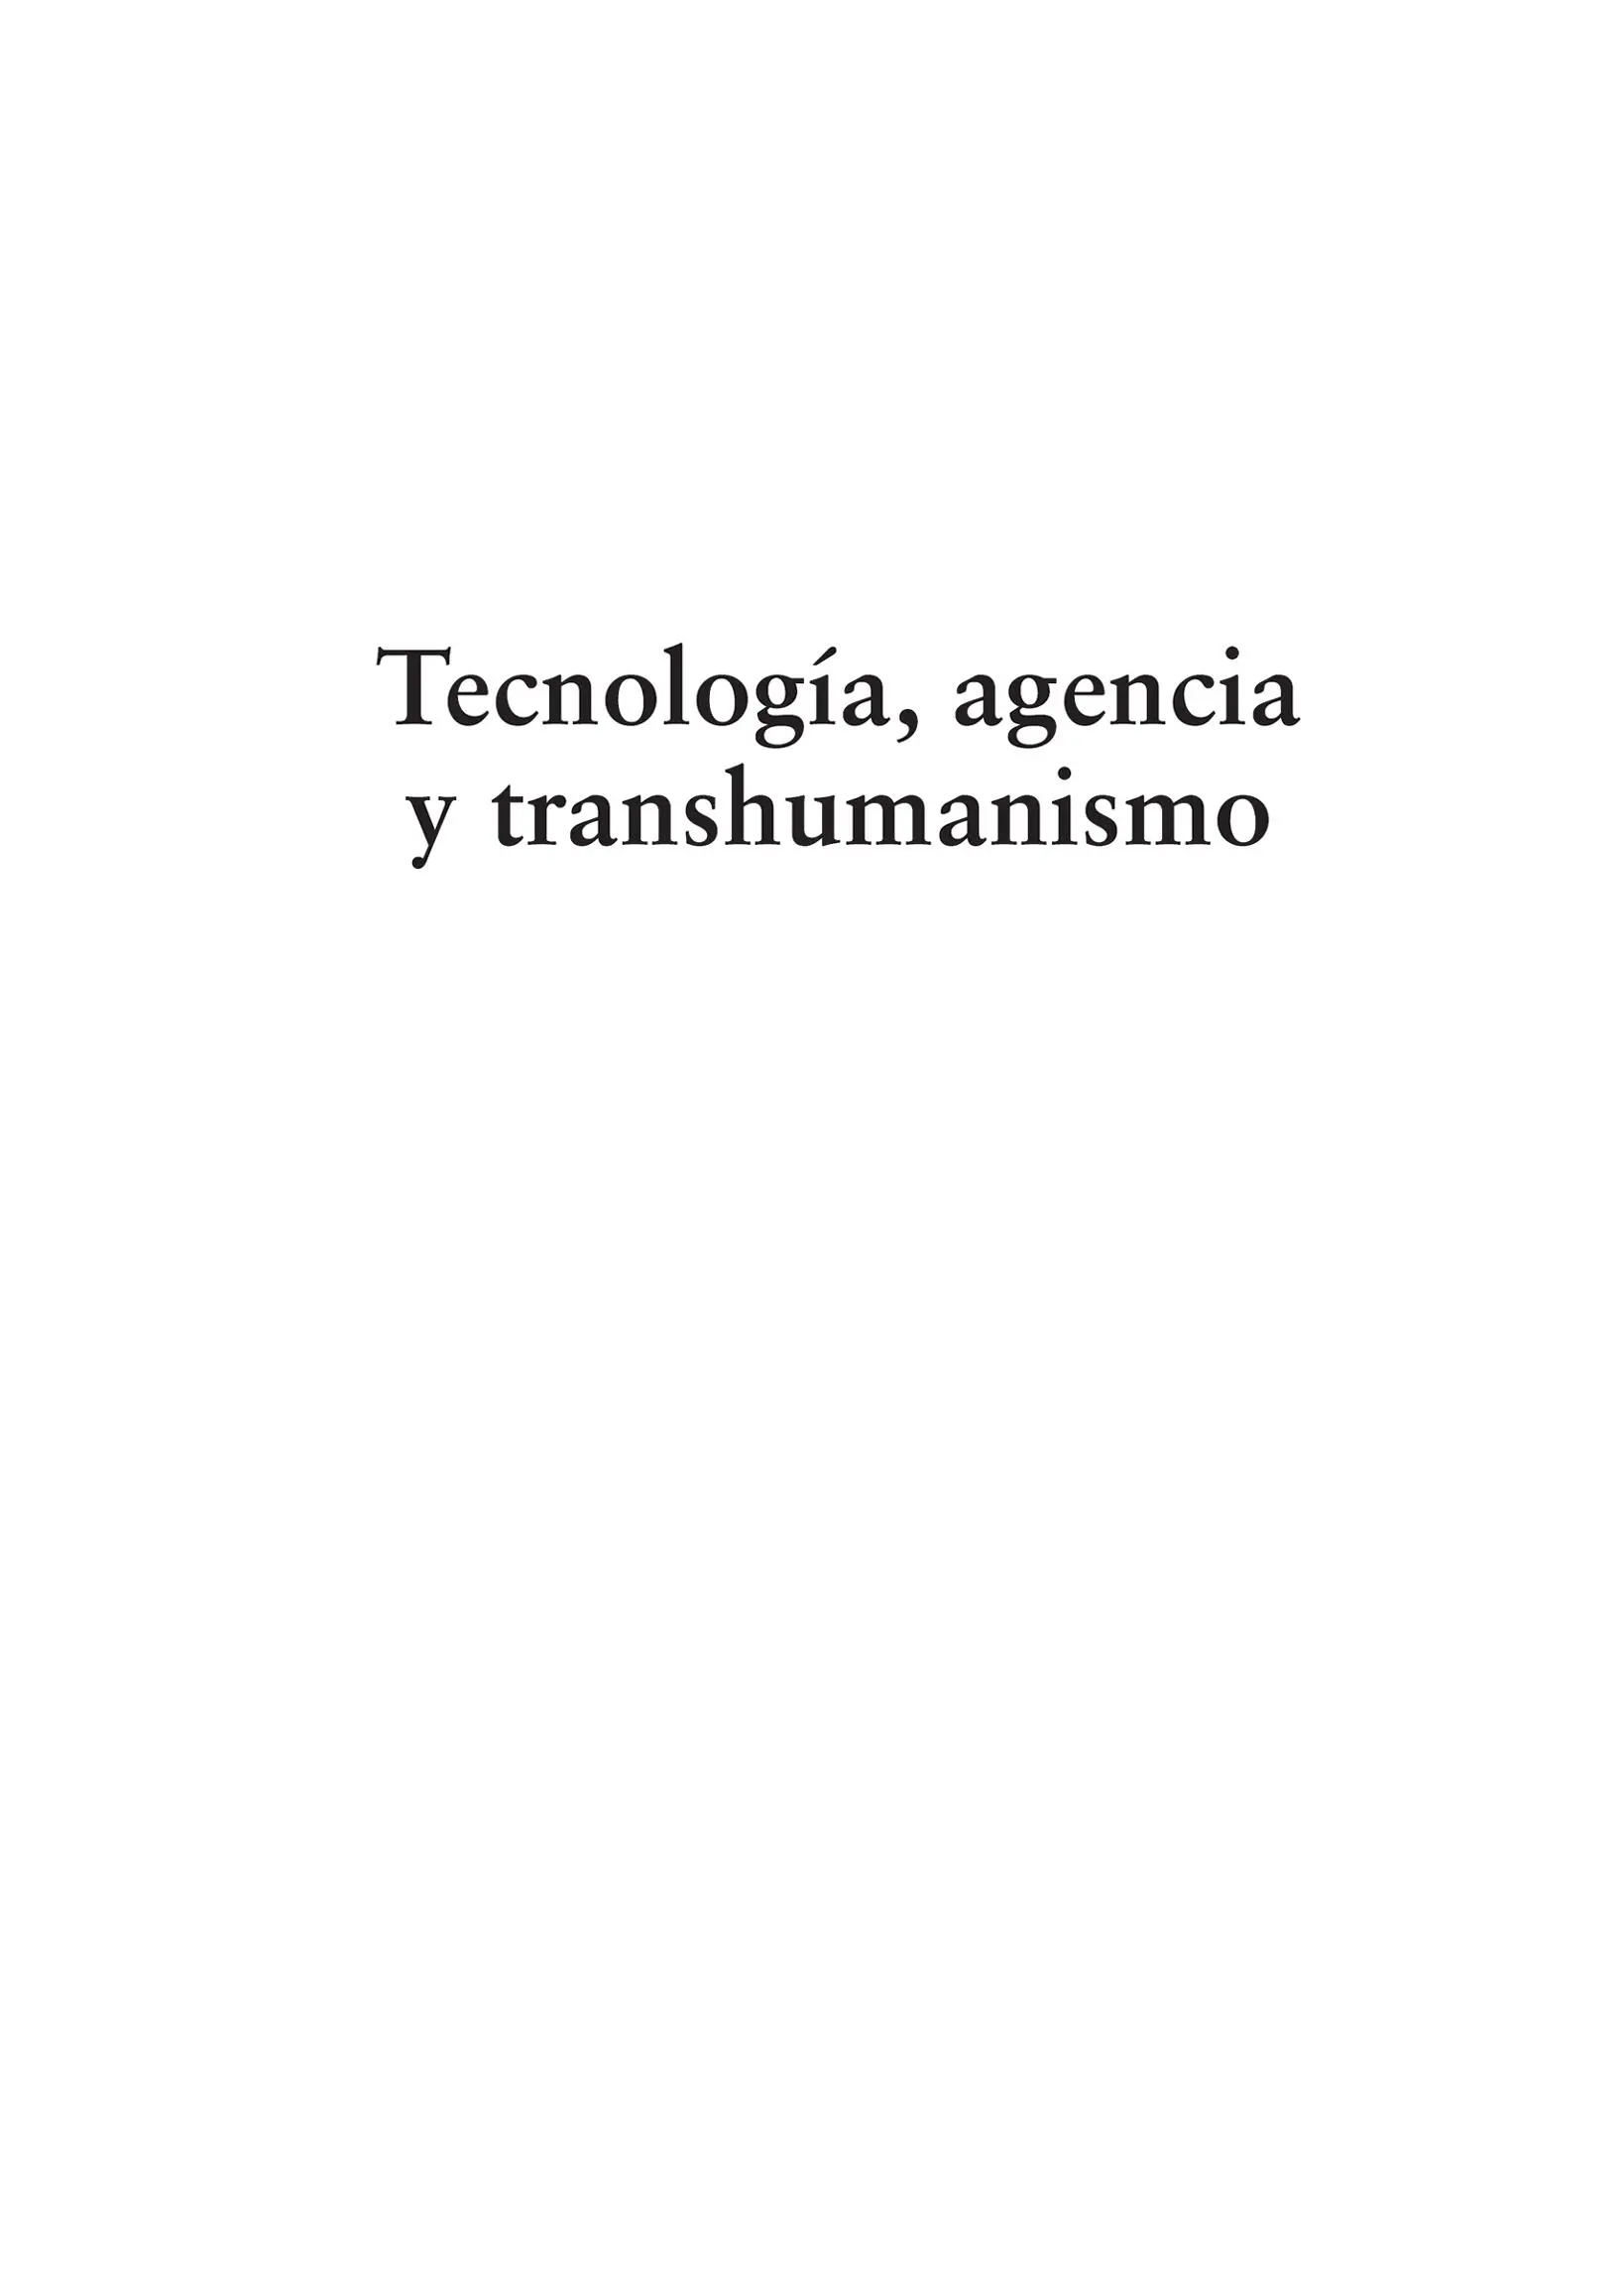 Moreno Ortiz Juan Carlos Tecnología agencia y transhumanismo Juan Carlos - фото 1